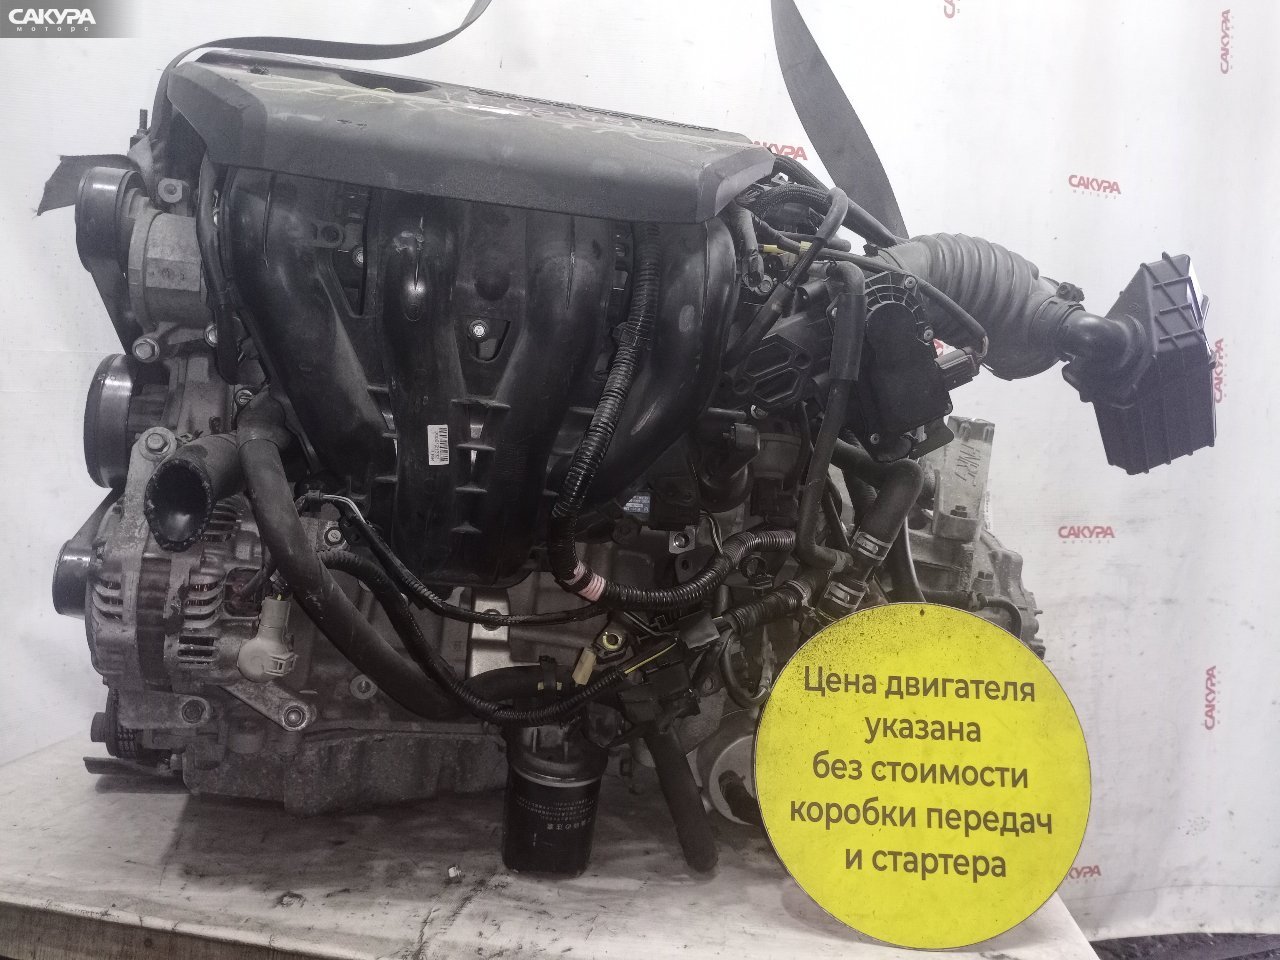 Двигатель Mazda Axela BKEP LF-VE: купить в Сакура Красноярск.